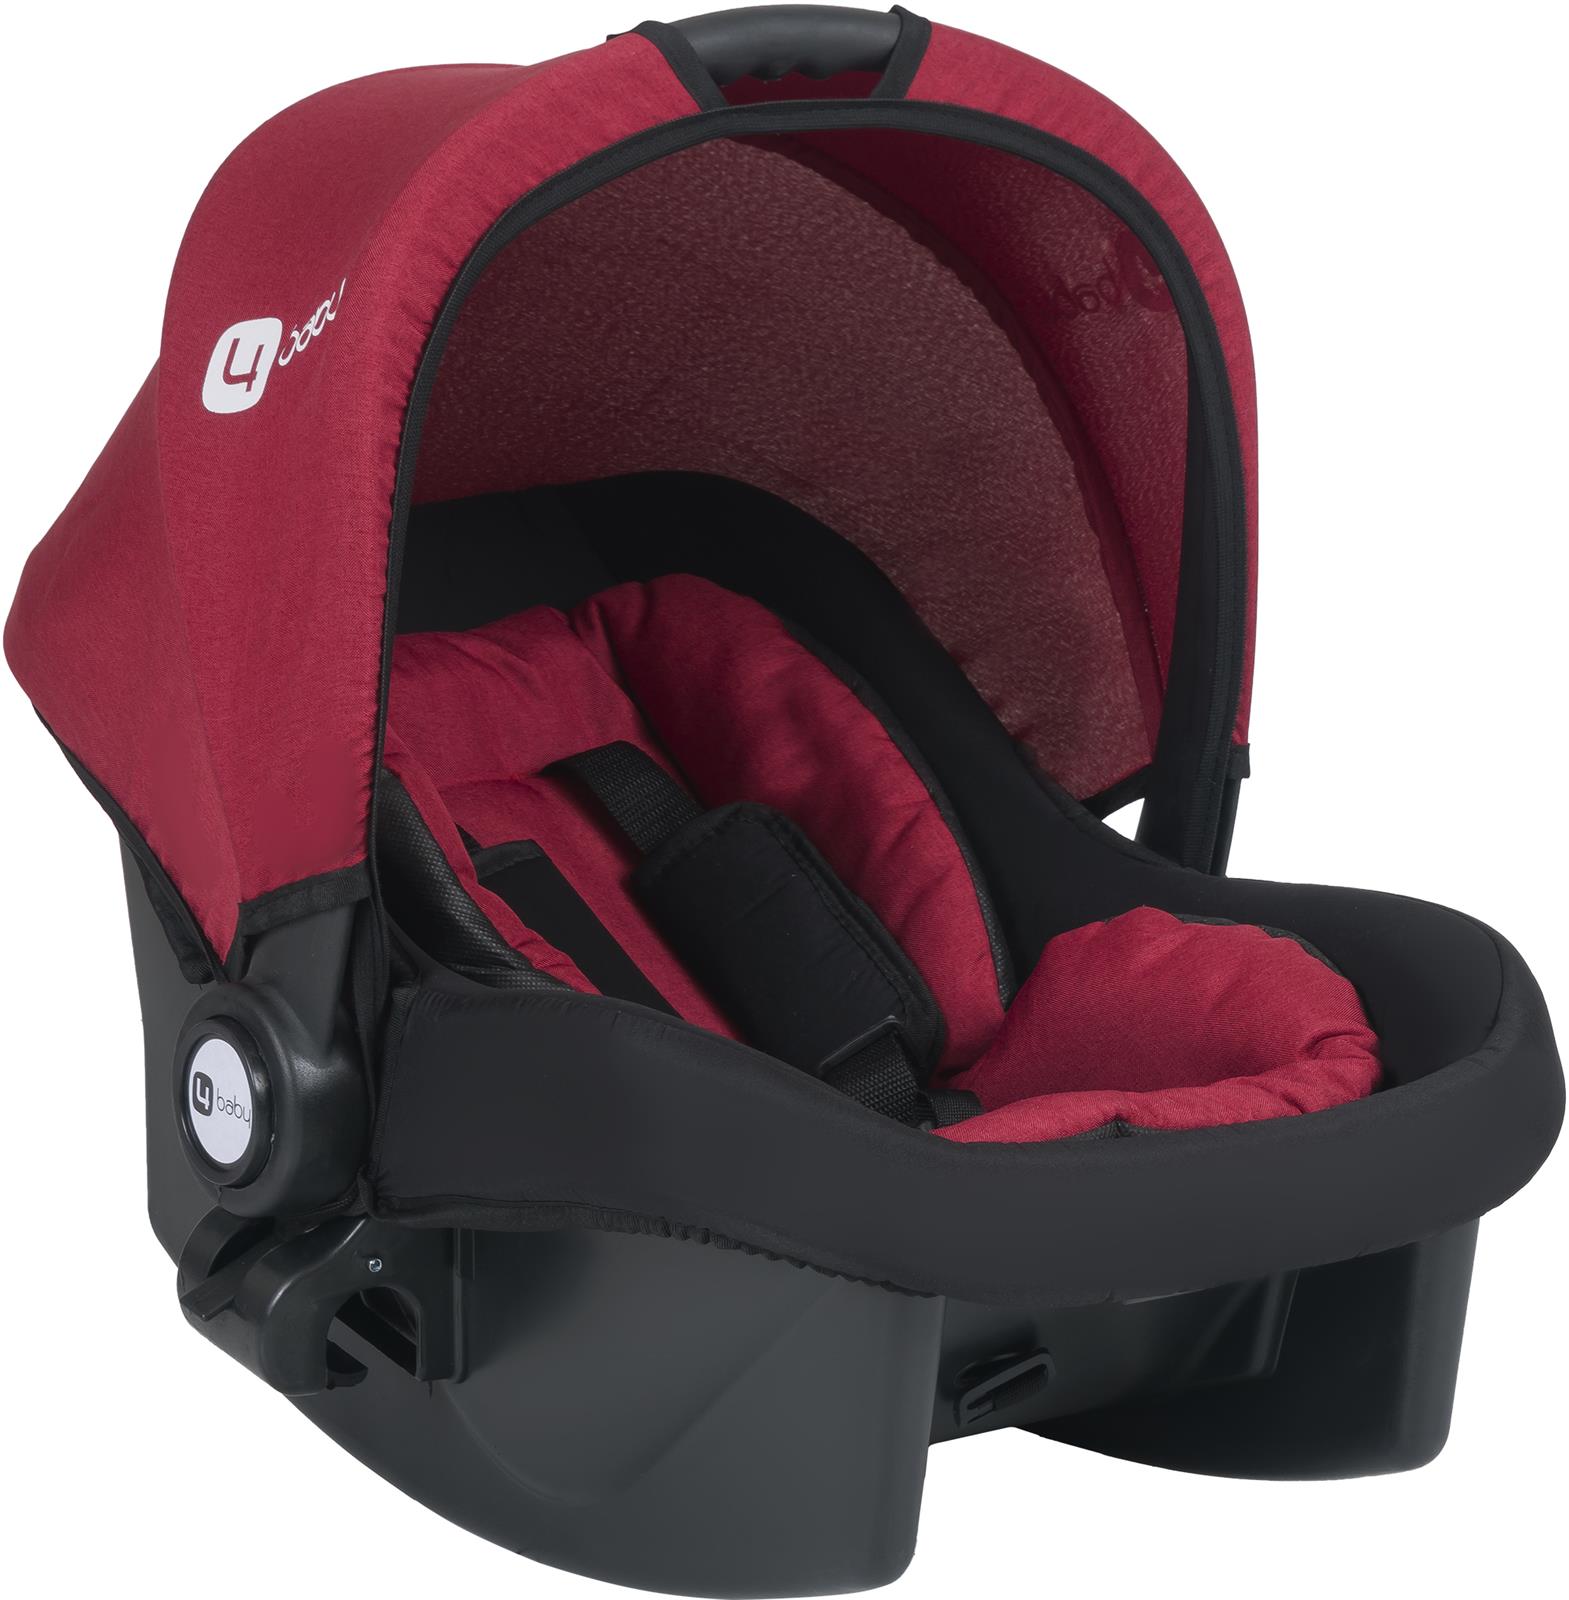 4 Baby Active Travel Sistem Bebek Arabası Kırmızı